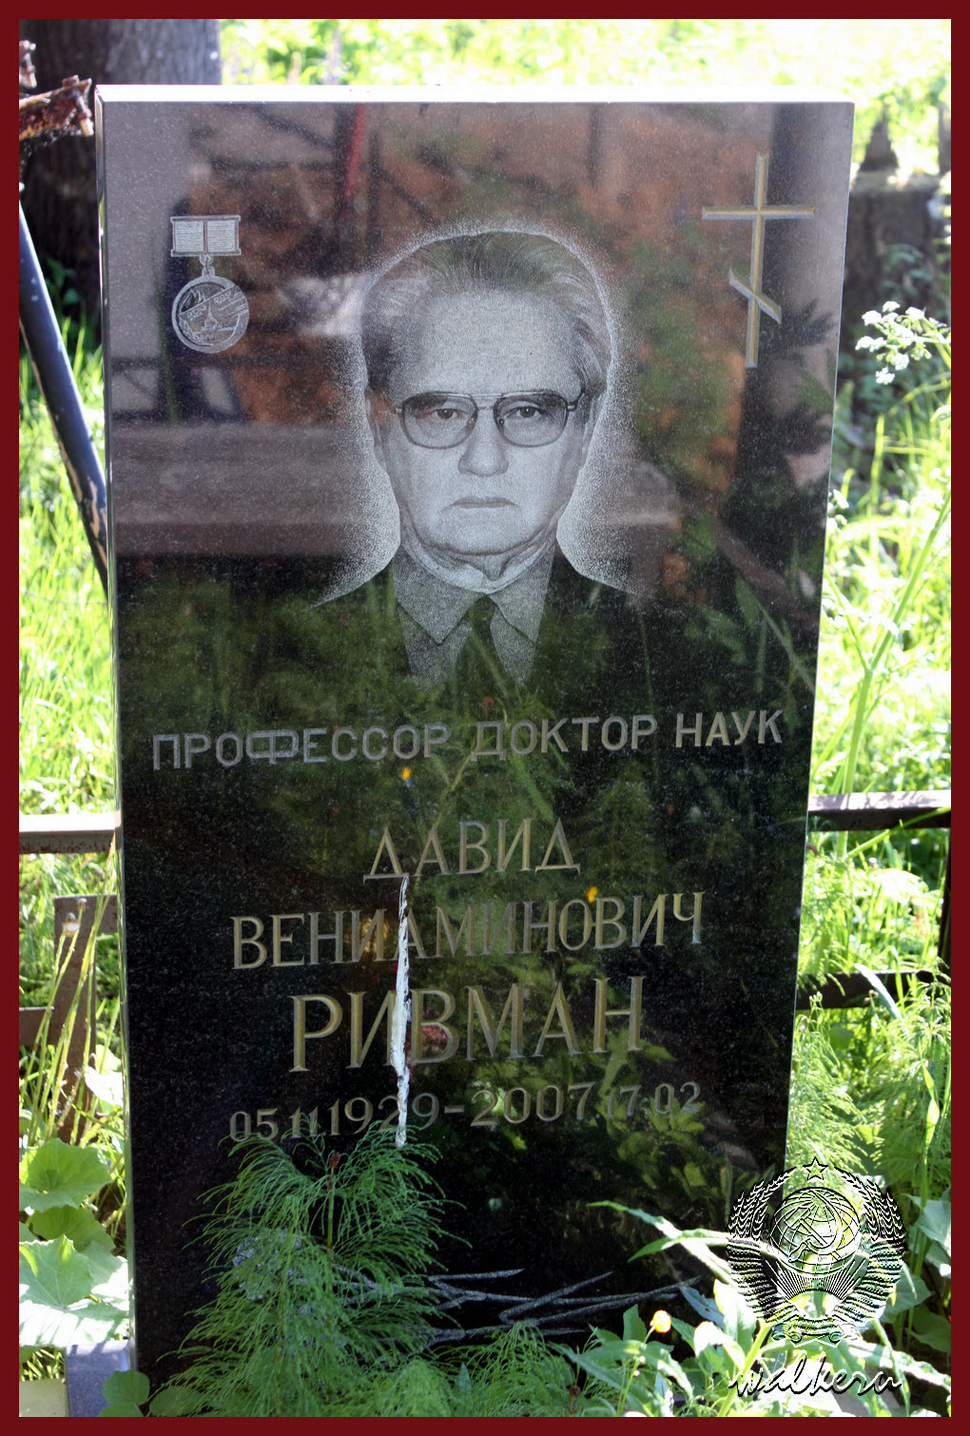 Могила Ривмана Д.В. на Иликовском кладбище